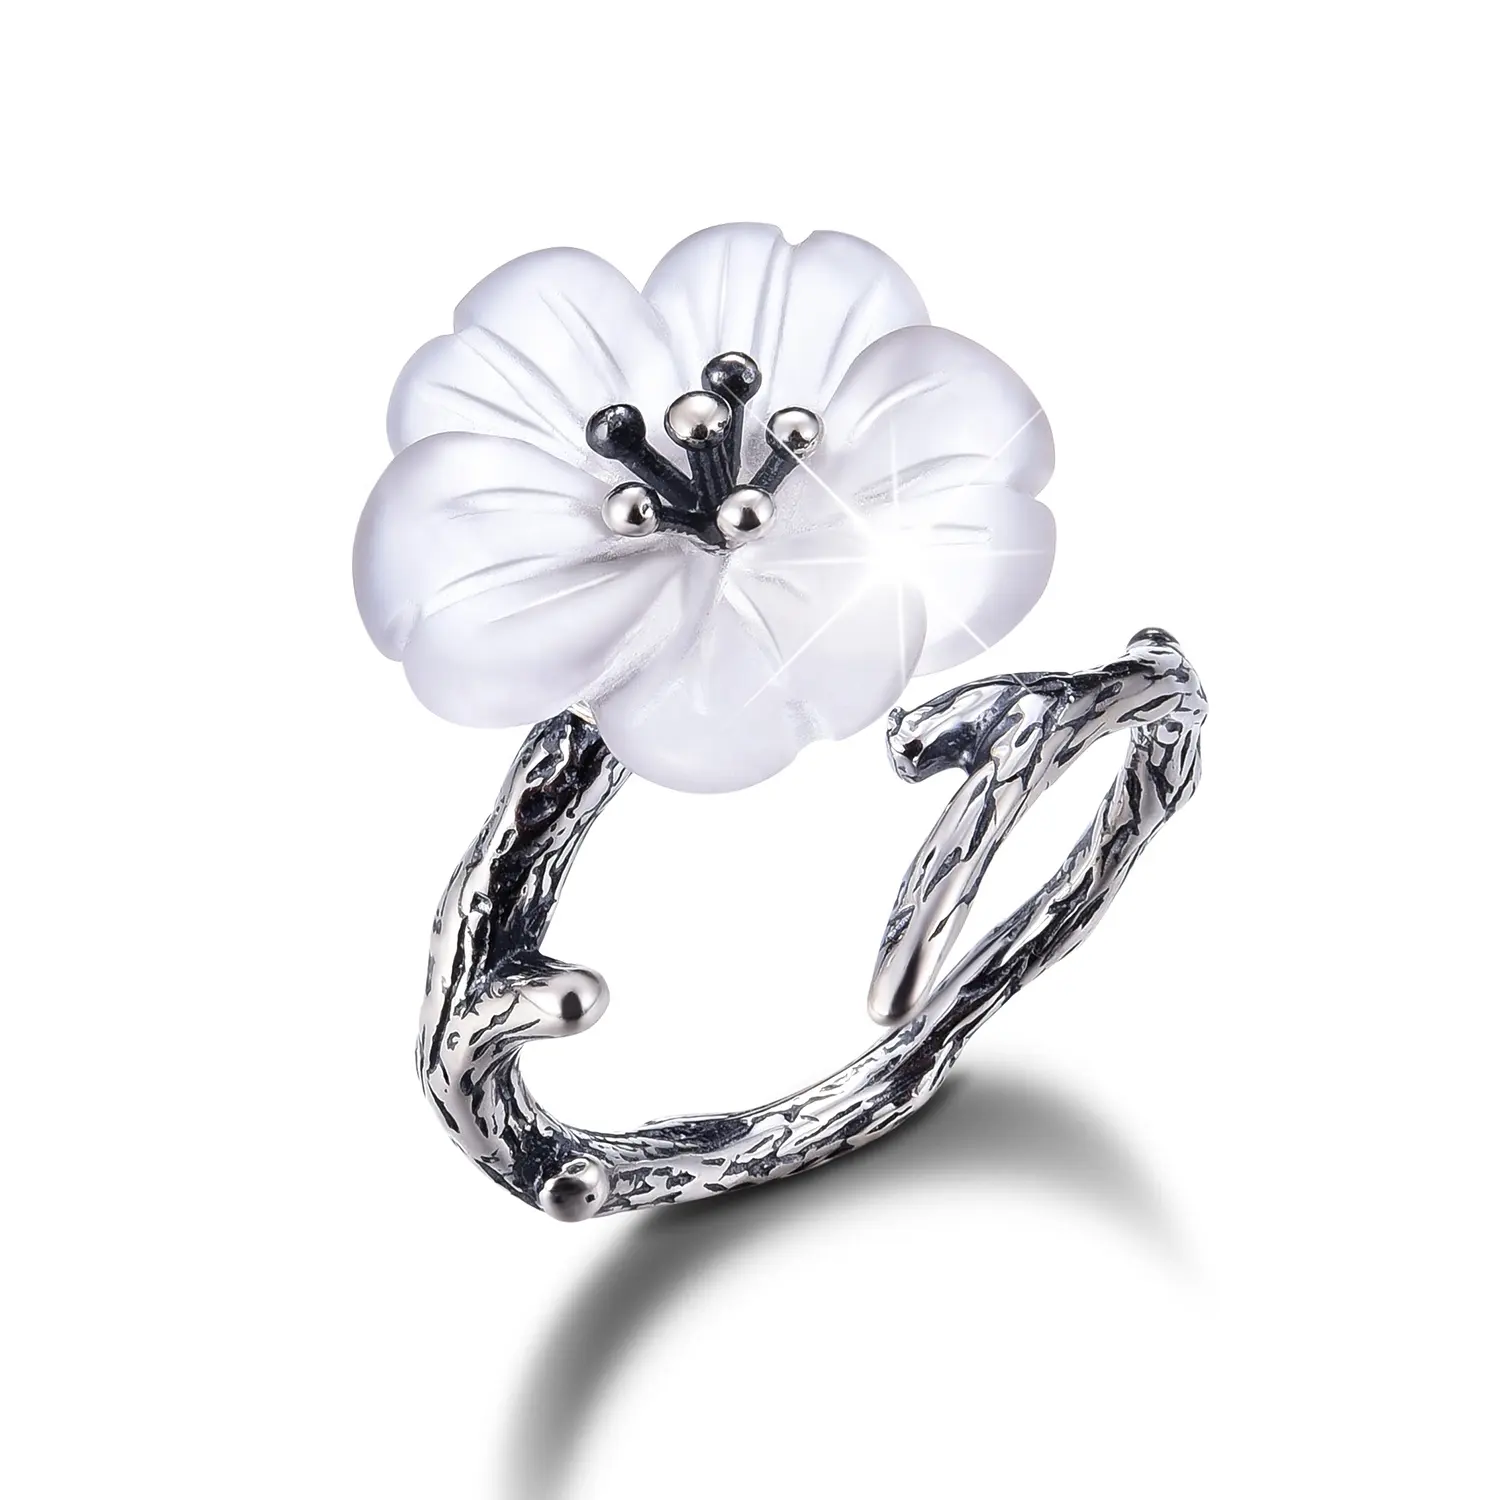 Anel de prata em forma de flor, feito à mão